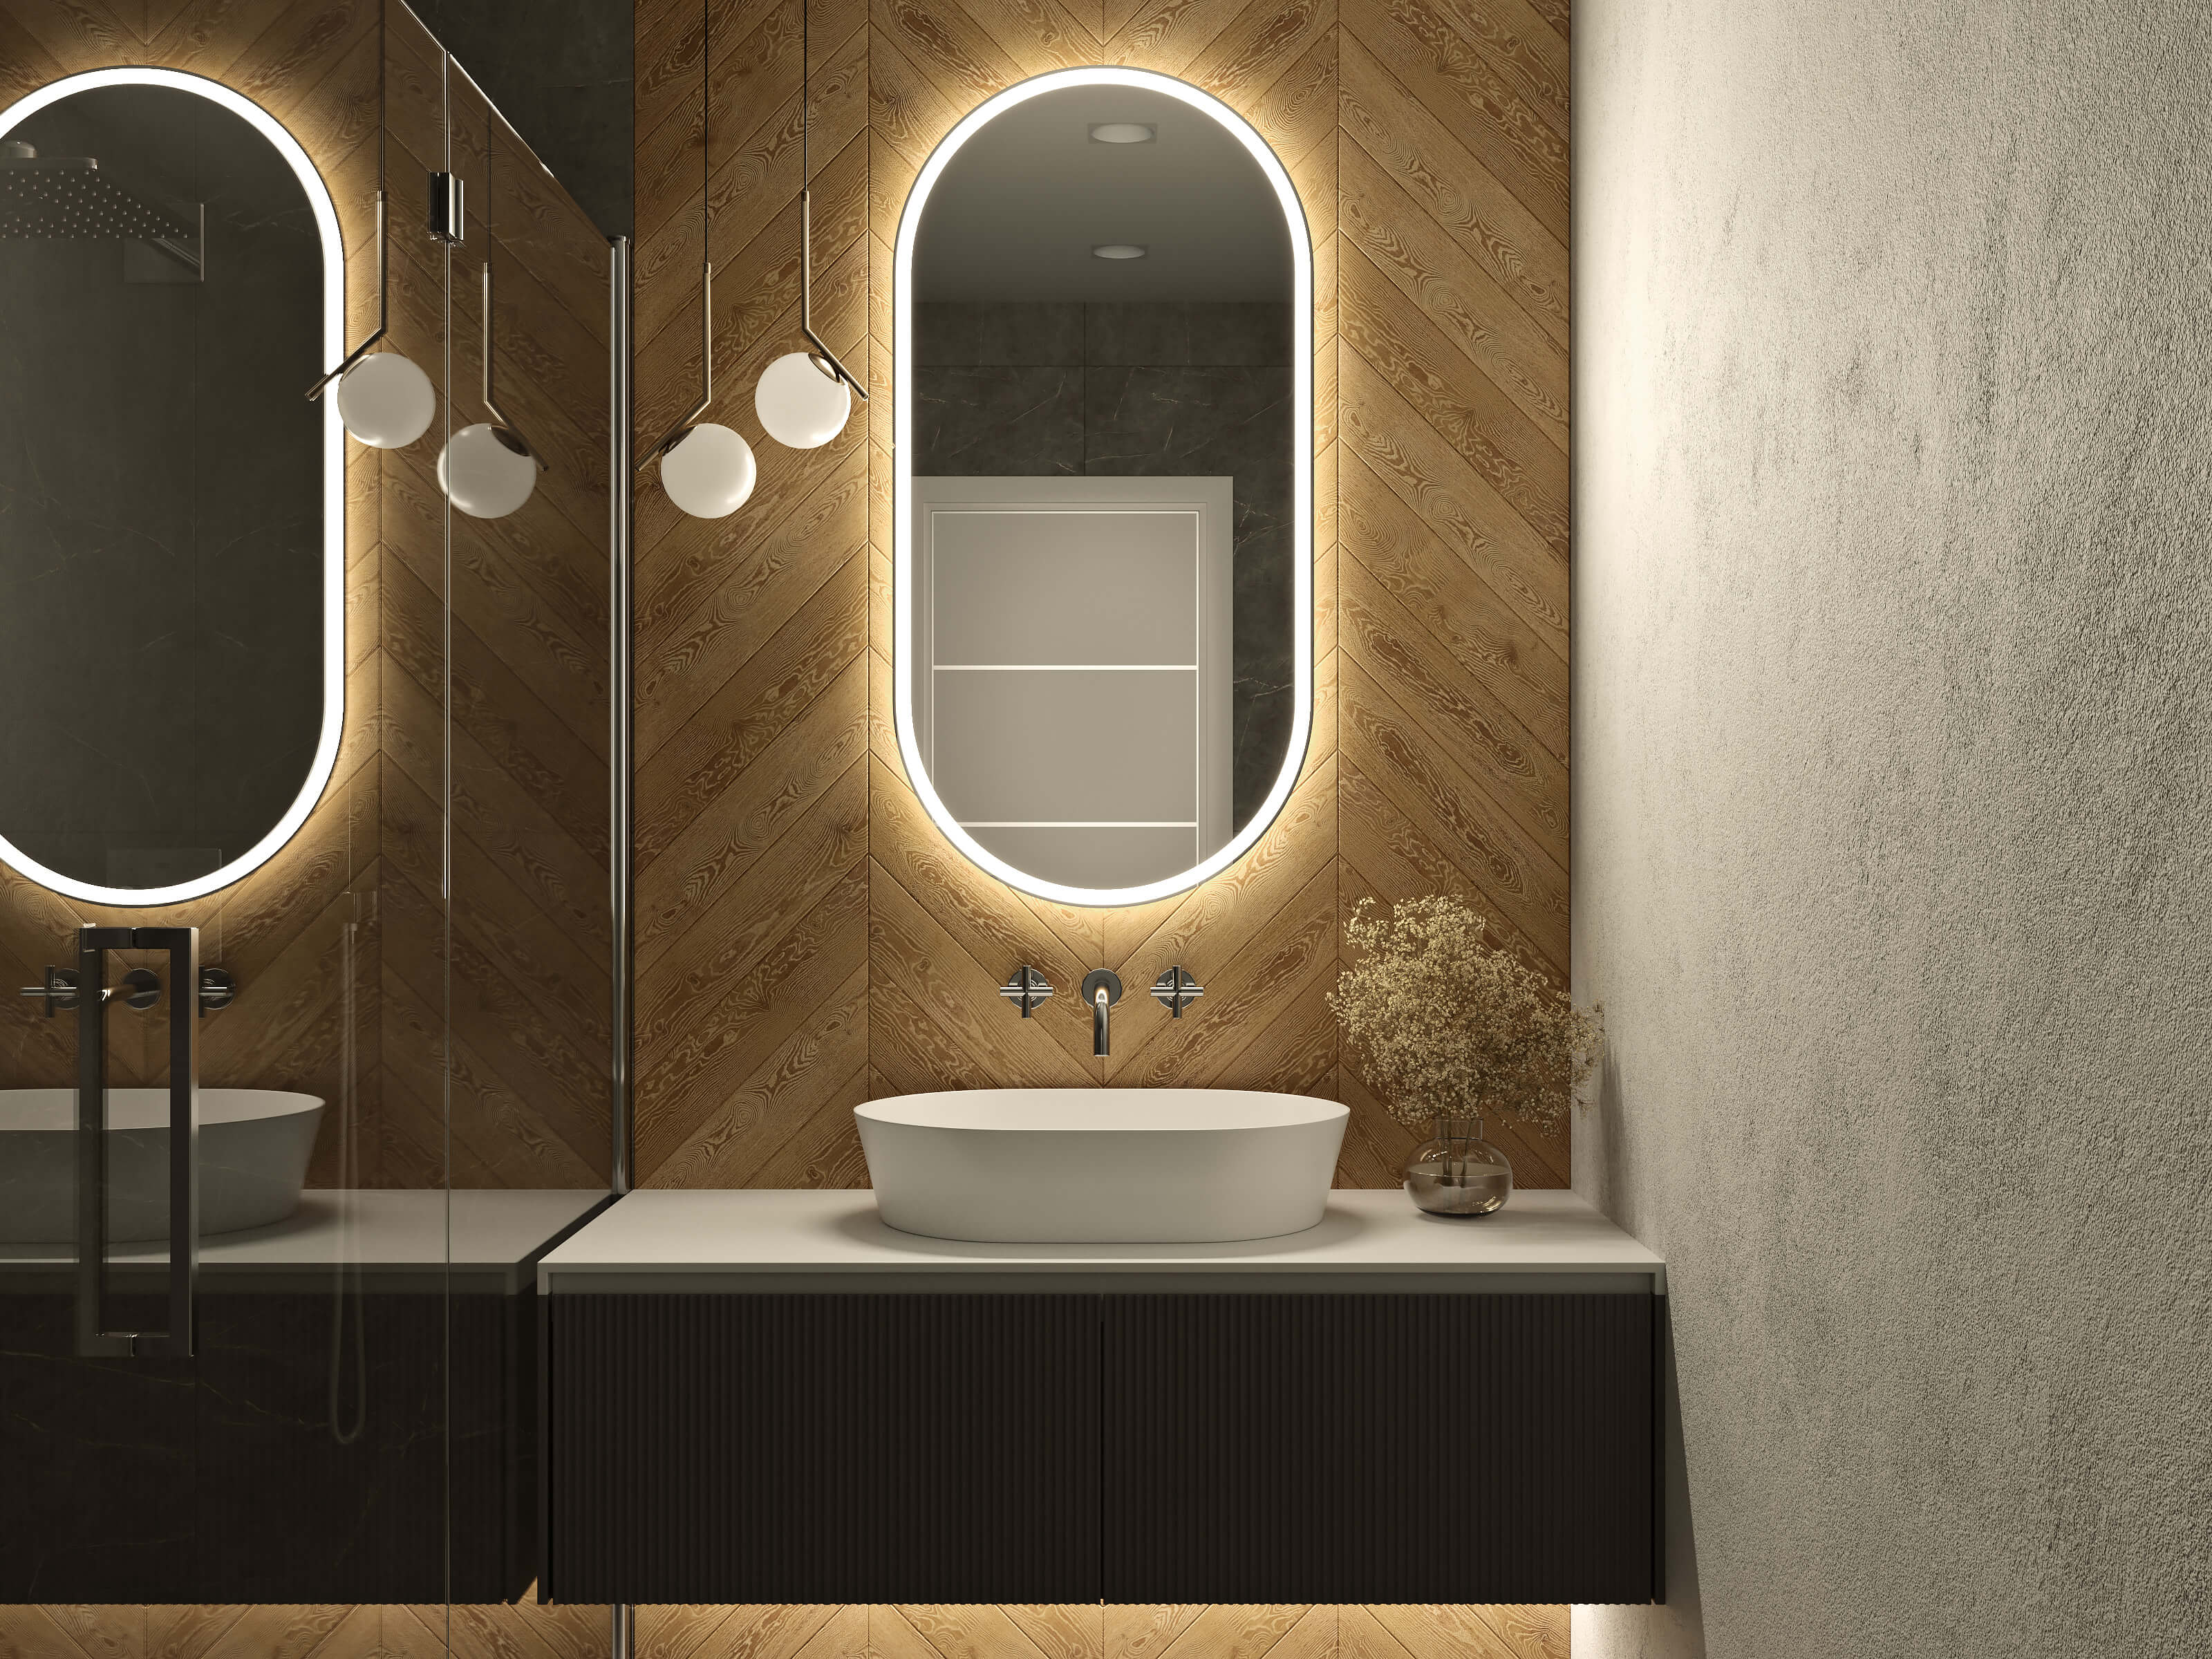 LED-Badspiegel mit neutralweißer Beleuchtung in 60 x 120 cm